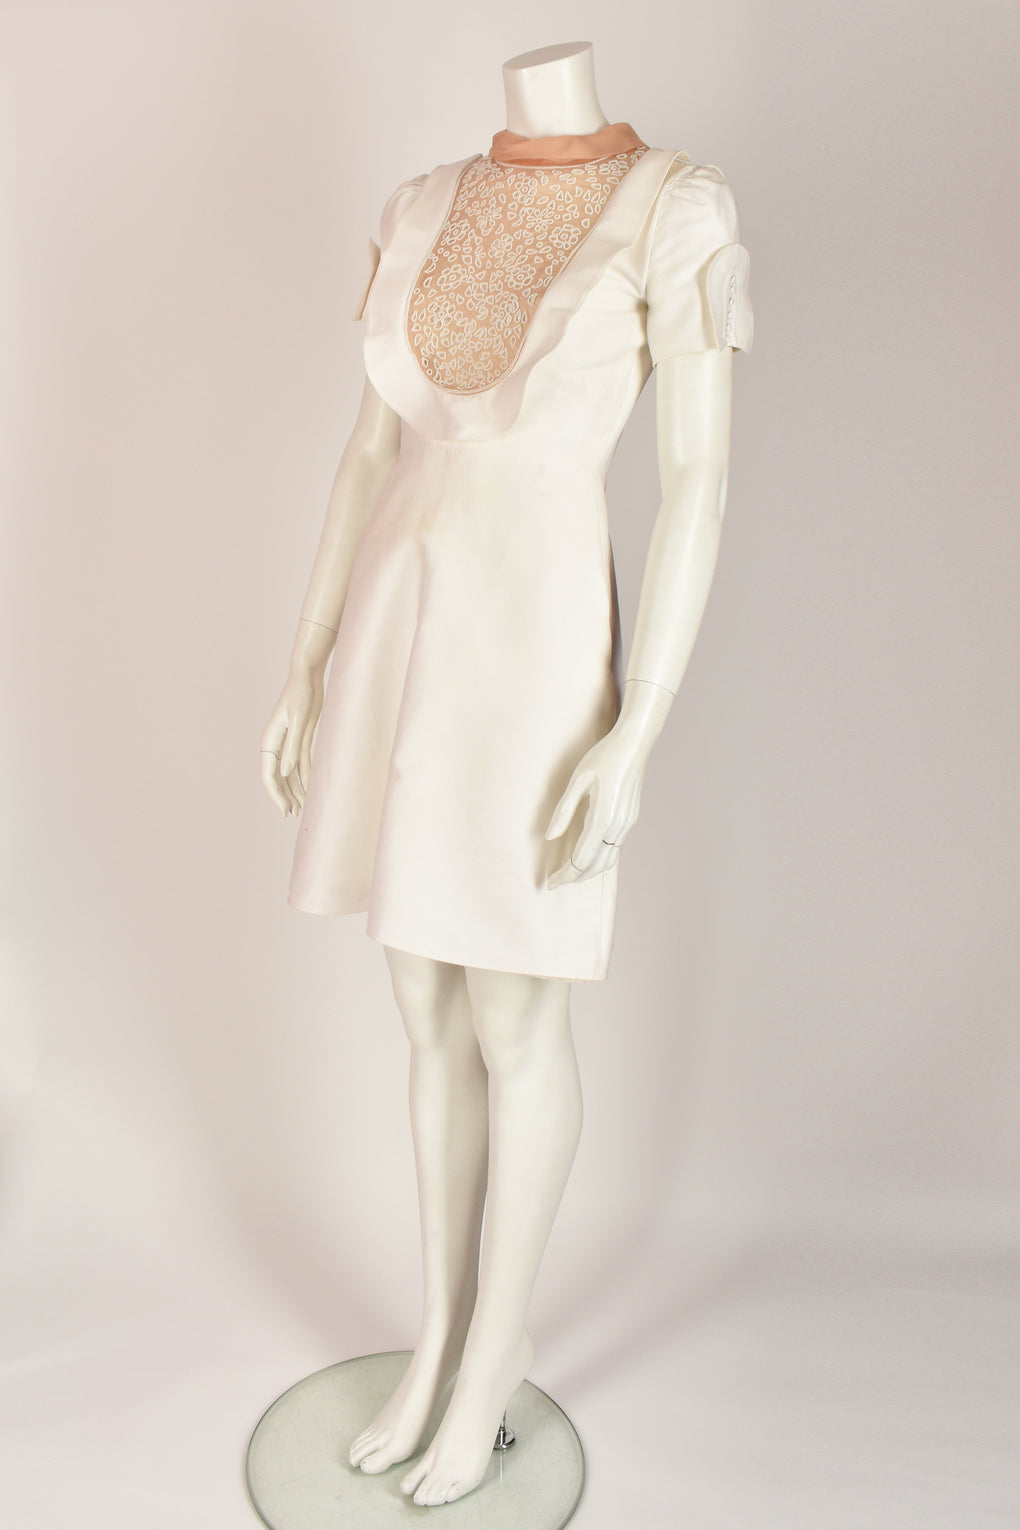 VALENTINO white bib dress S